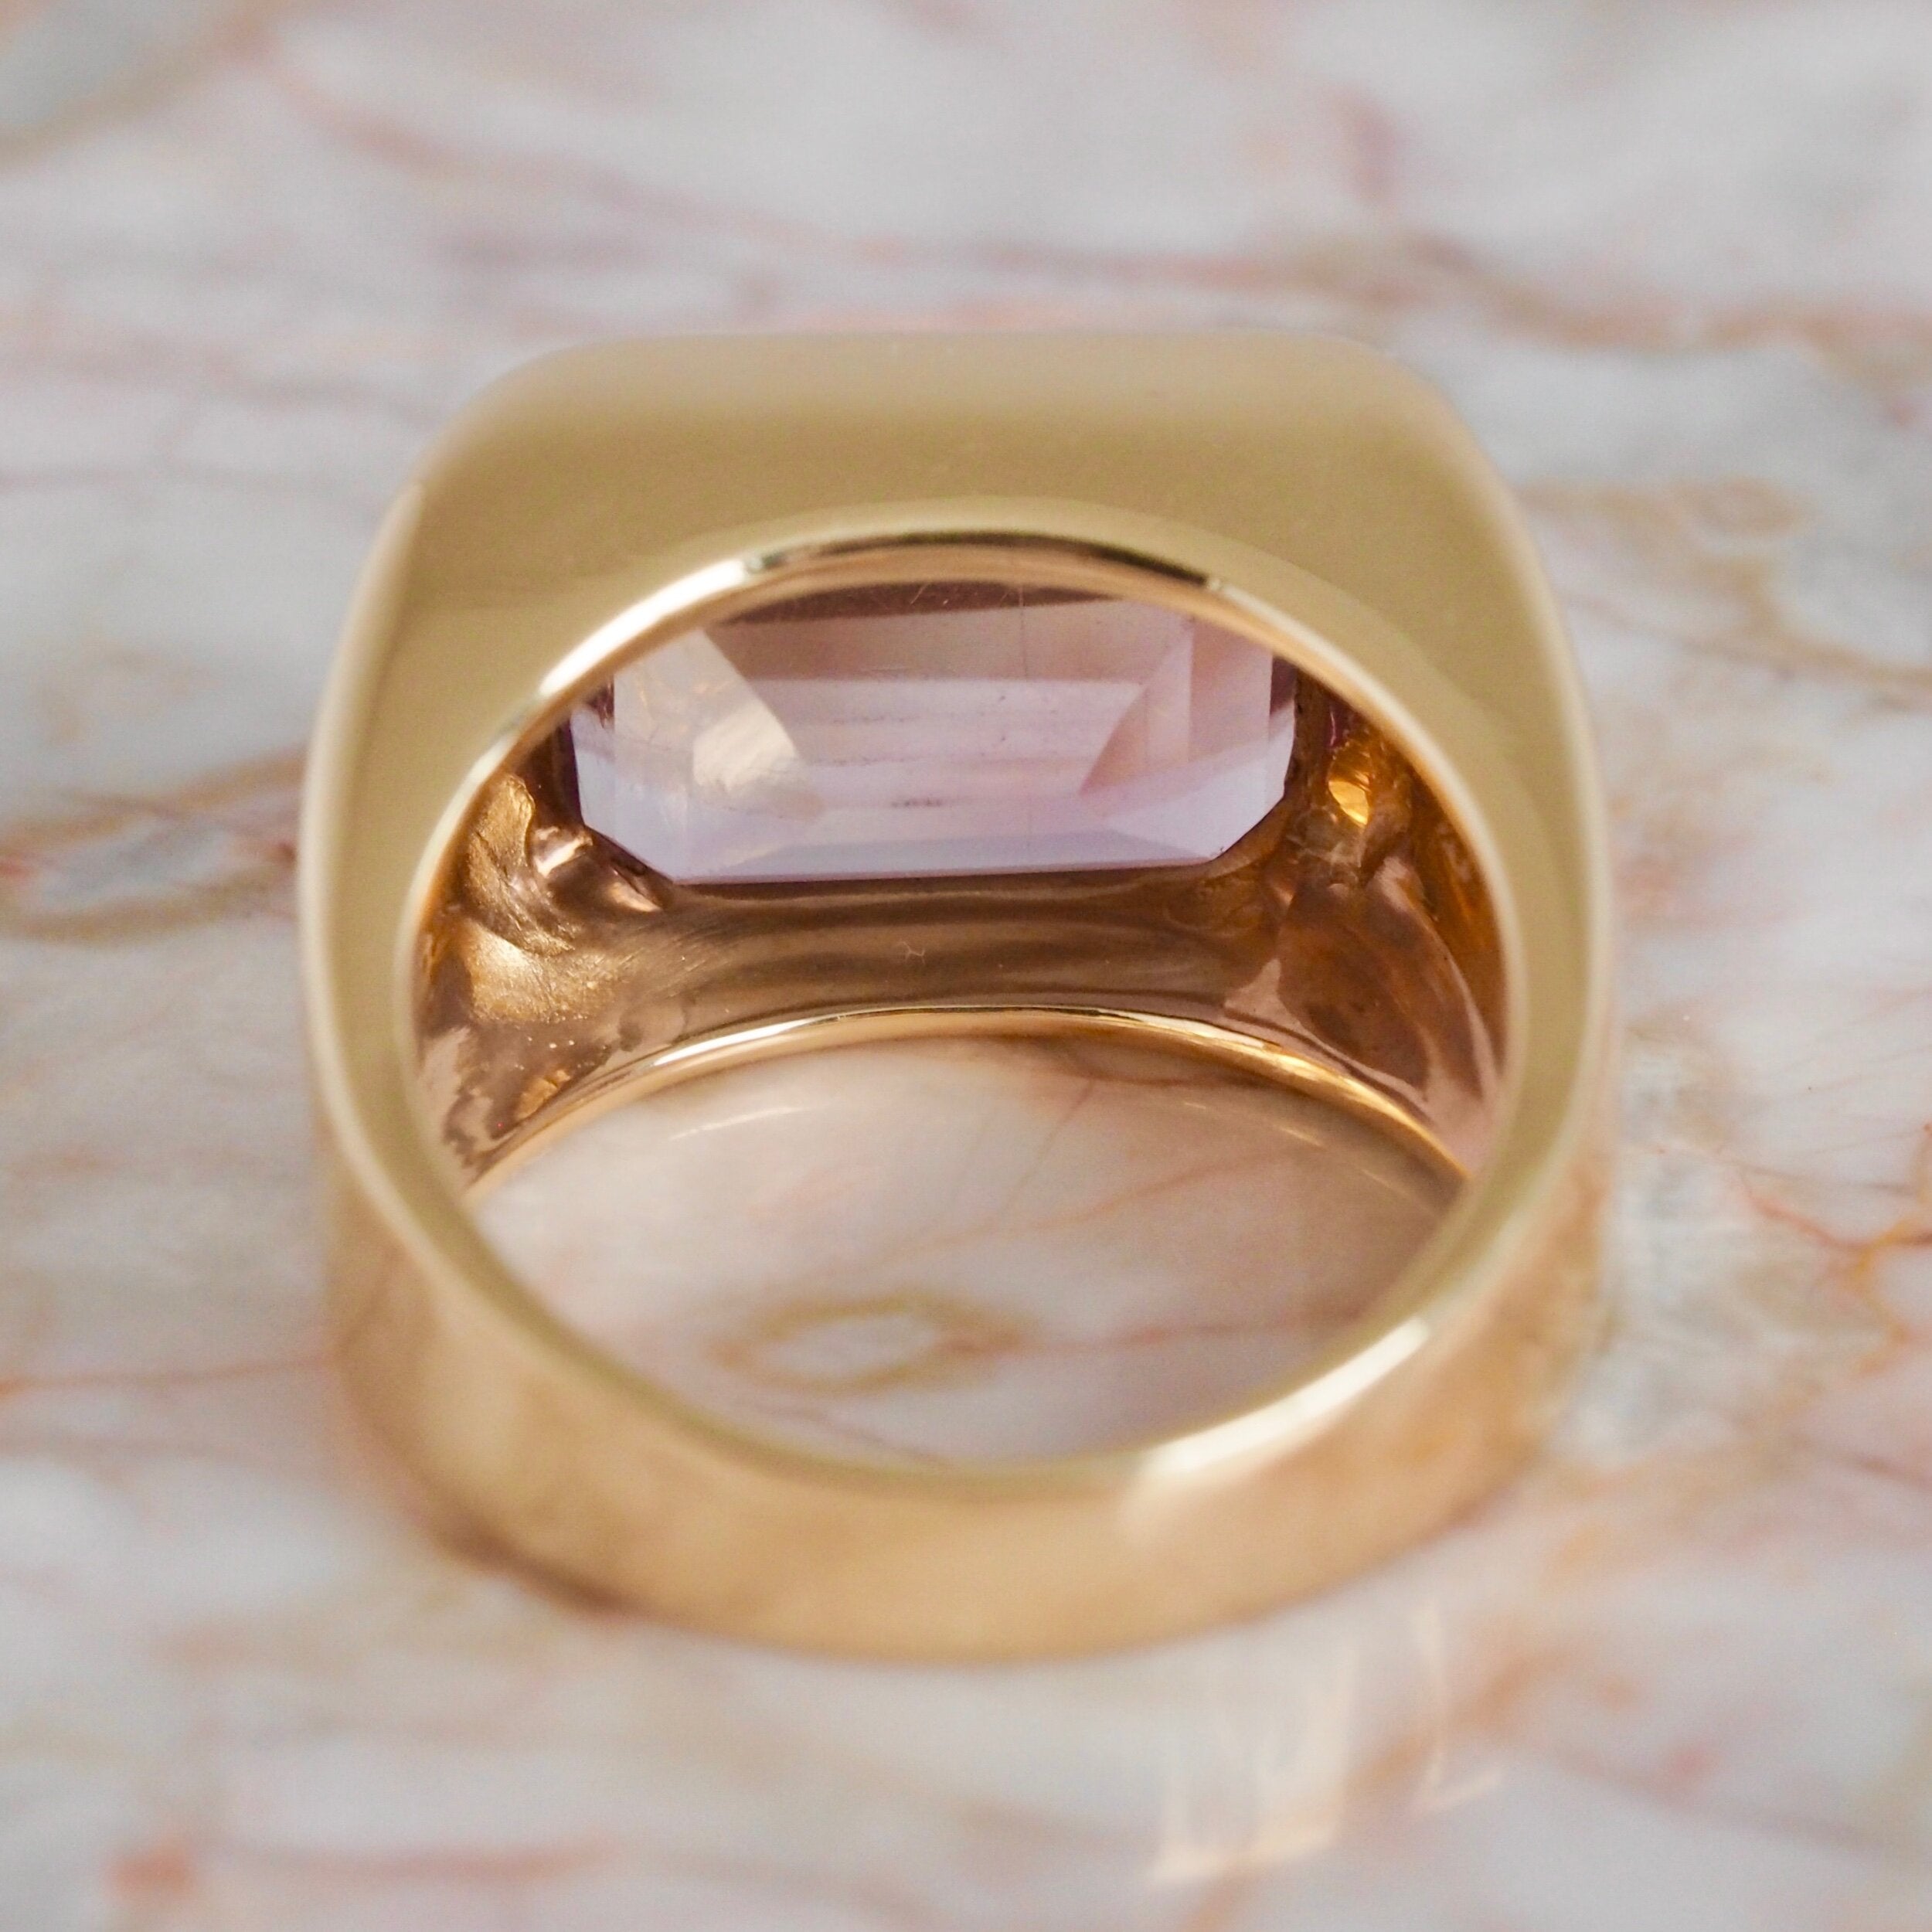 Vintage 14k Gold Rose de France Amethyst Ring